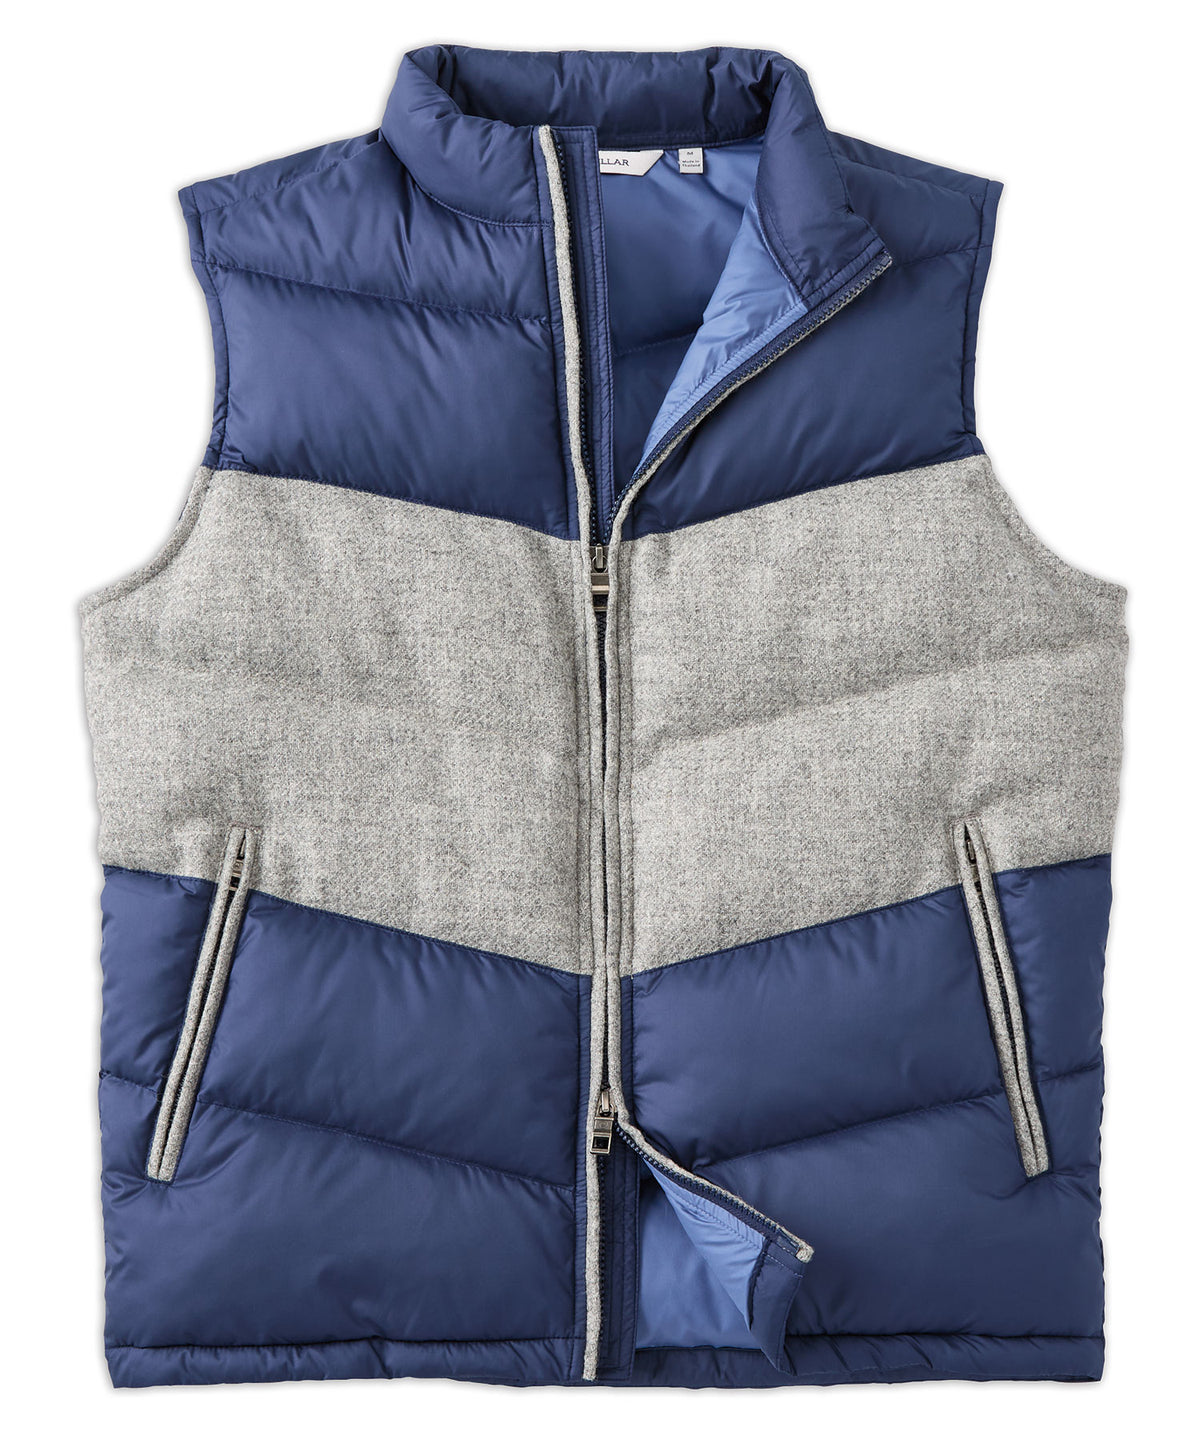 Peter Millar Alpine Vest, Big & Tall